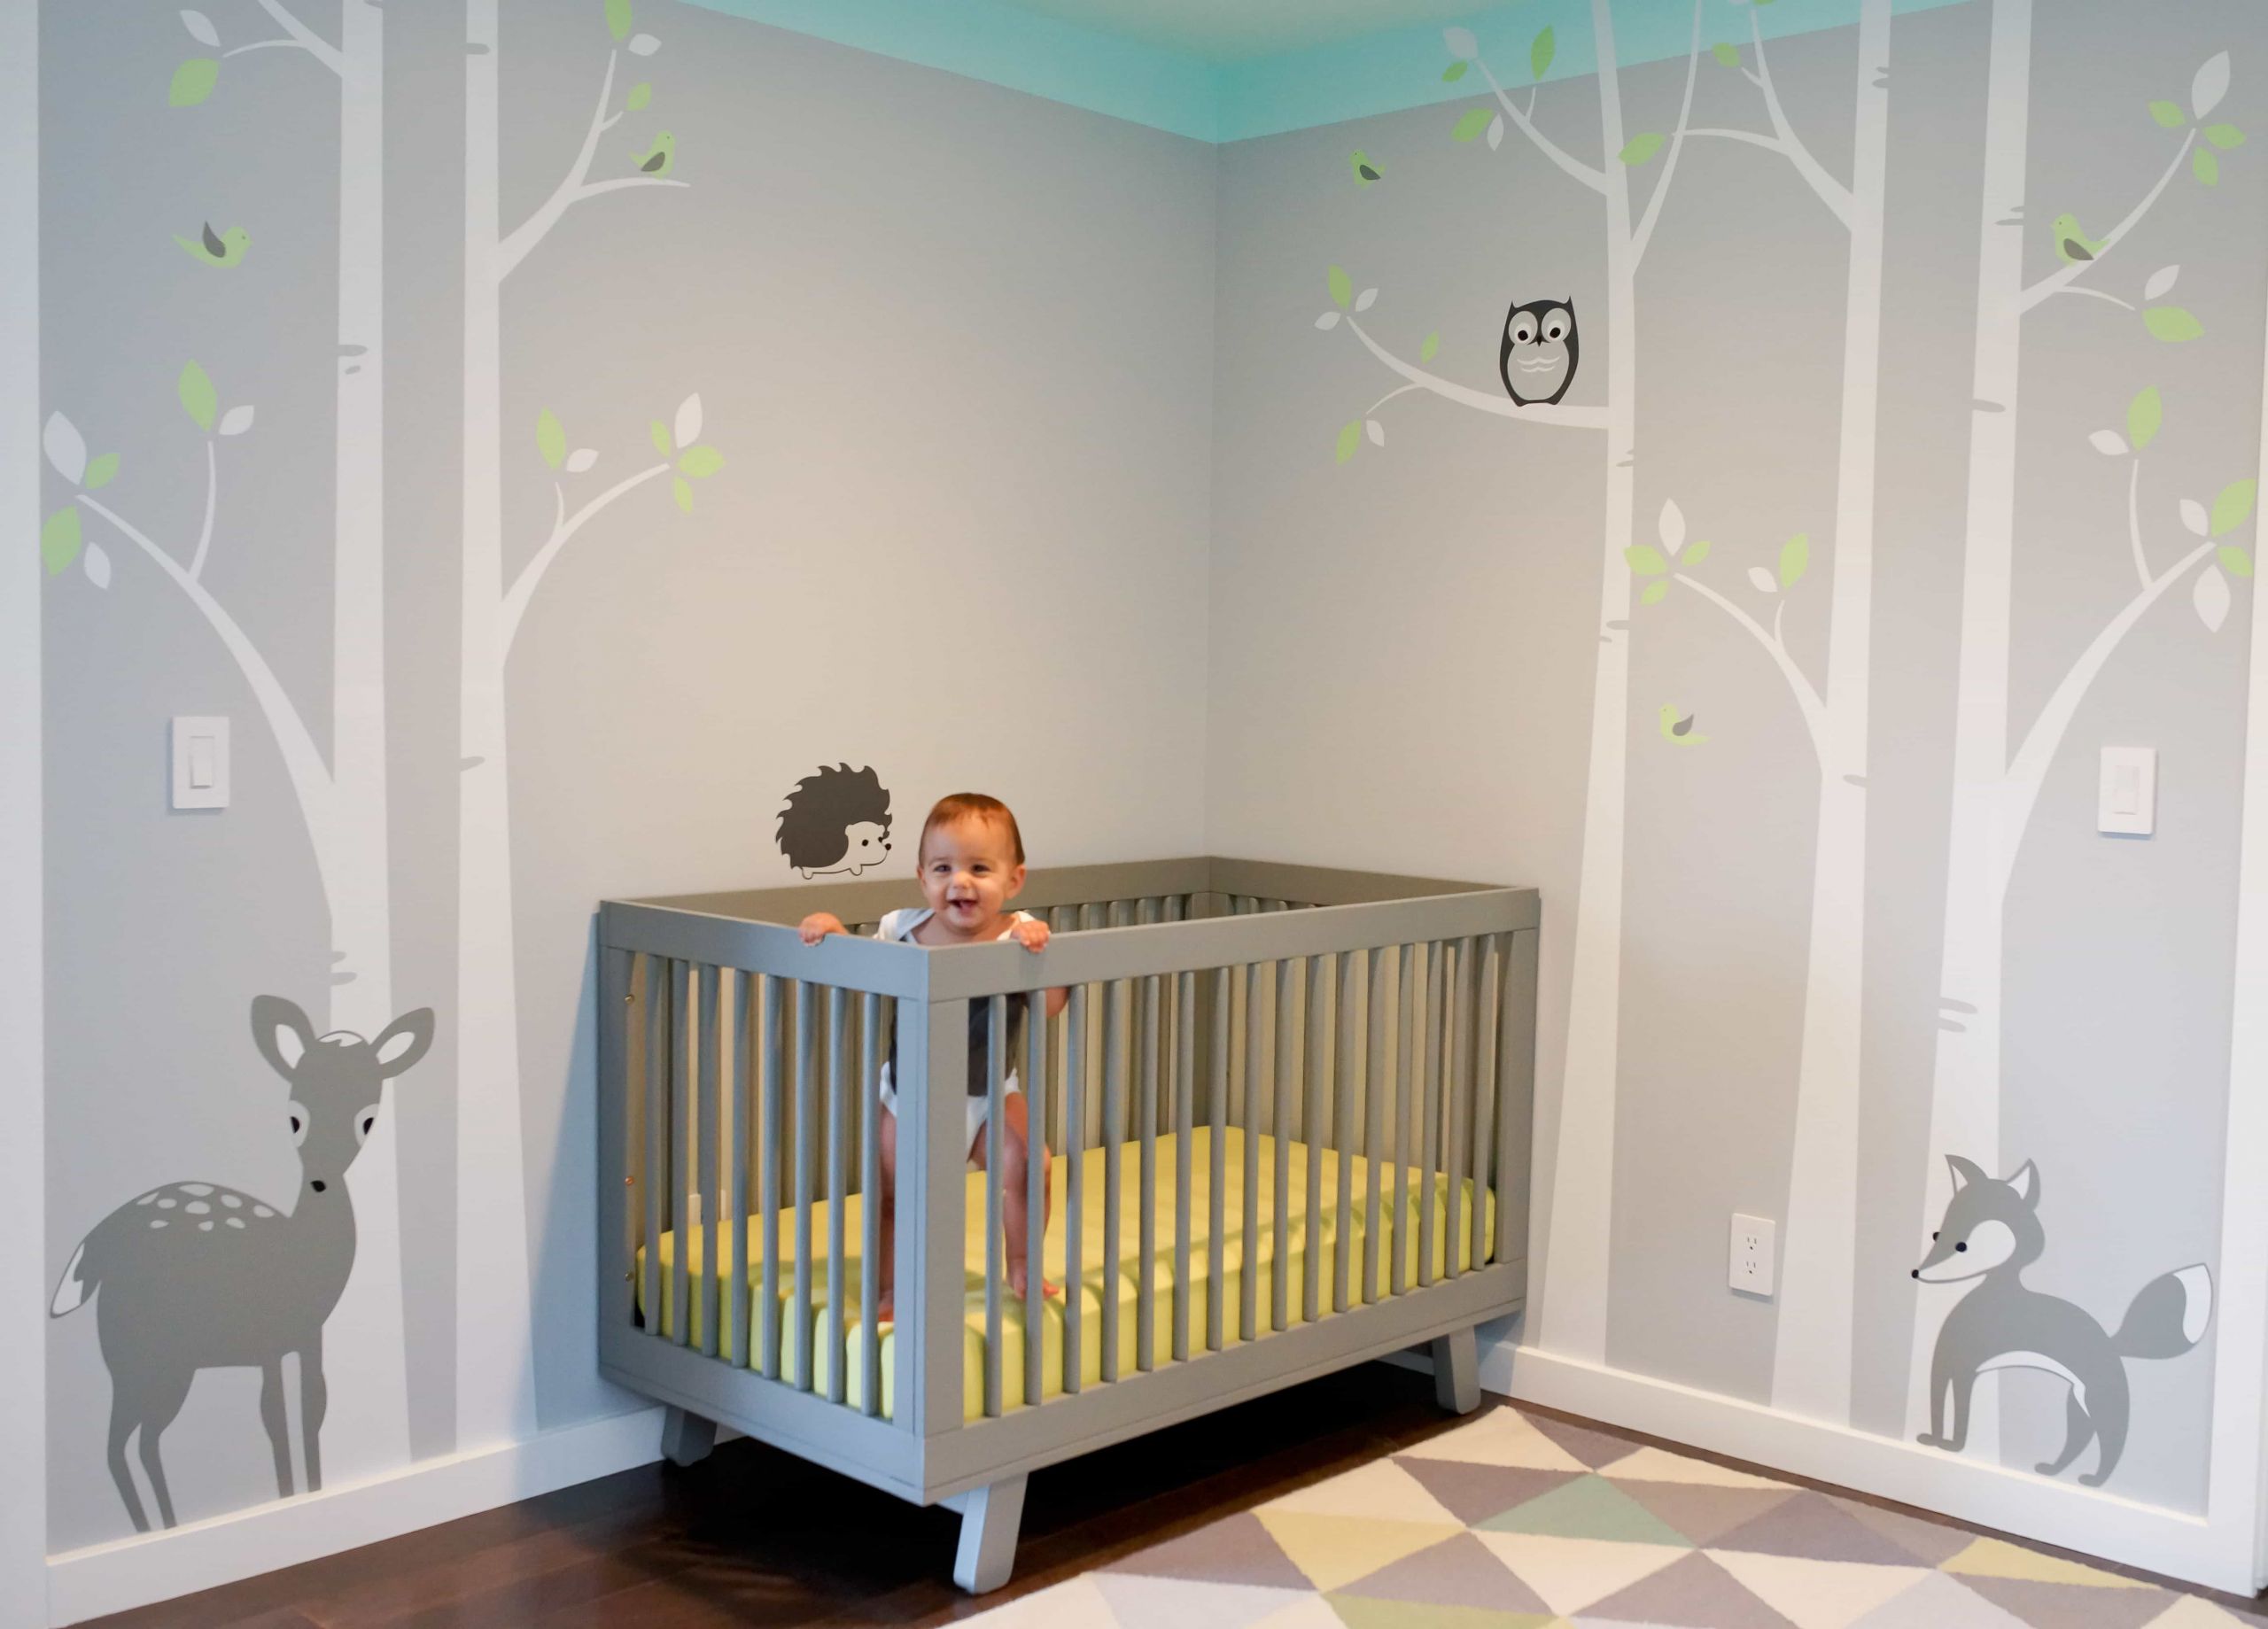 Baby Room Wall Decoration Ideas
 Minimalist Nursery Bedroom Furniture Design Ideas 5606